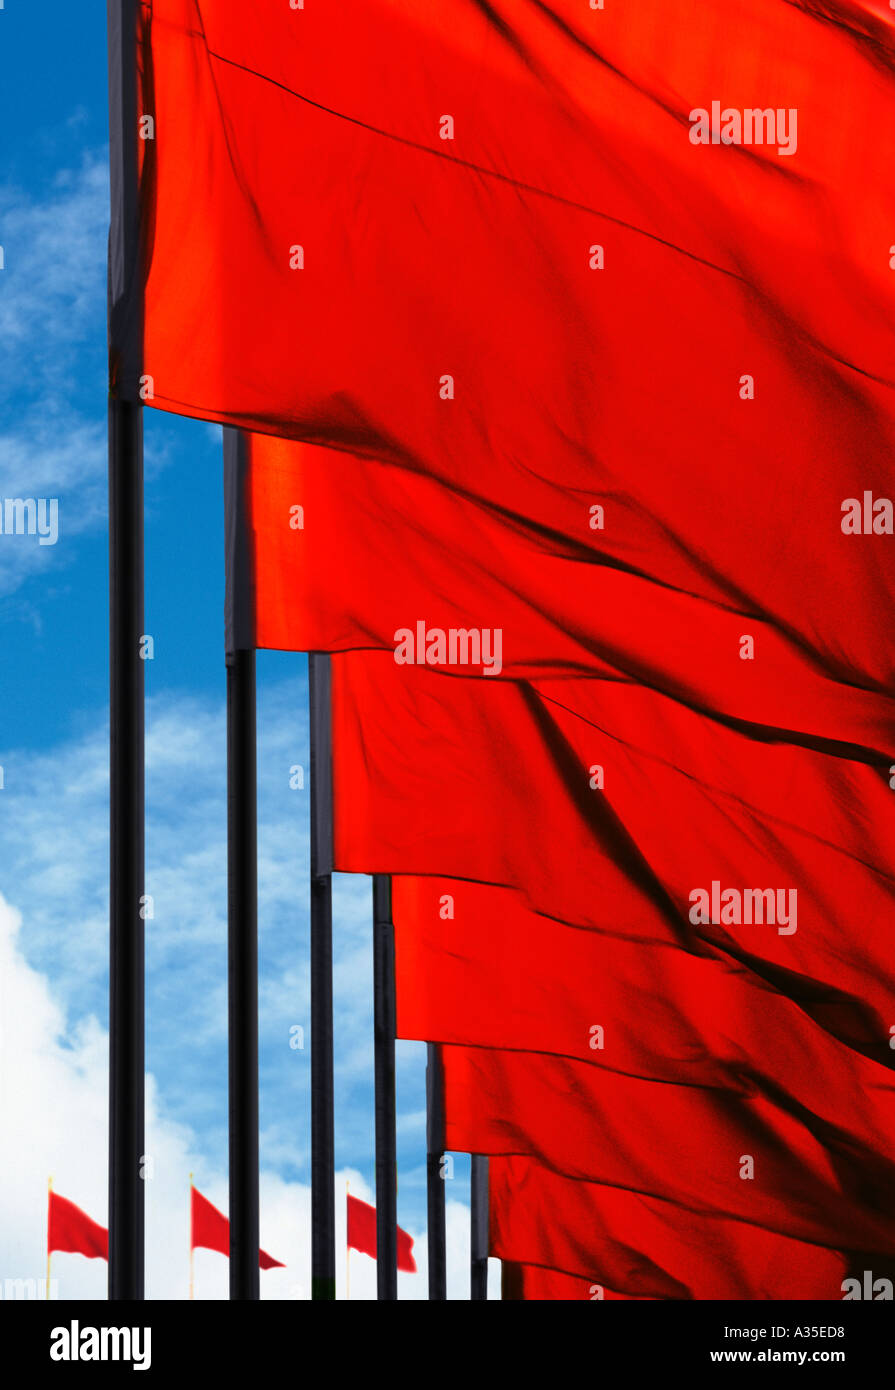 Banderas Rojas Volando, Plaza Tiananmen, Beijing, China. Símbolo comunista. Foto de stock